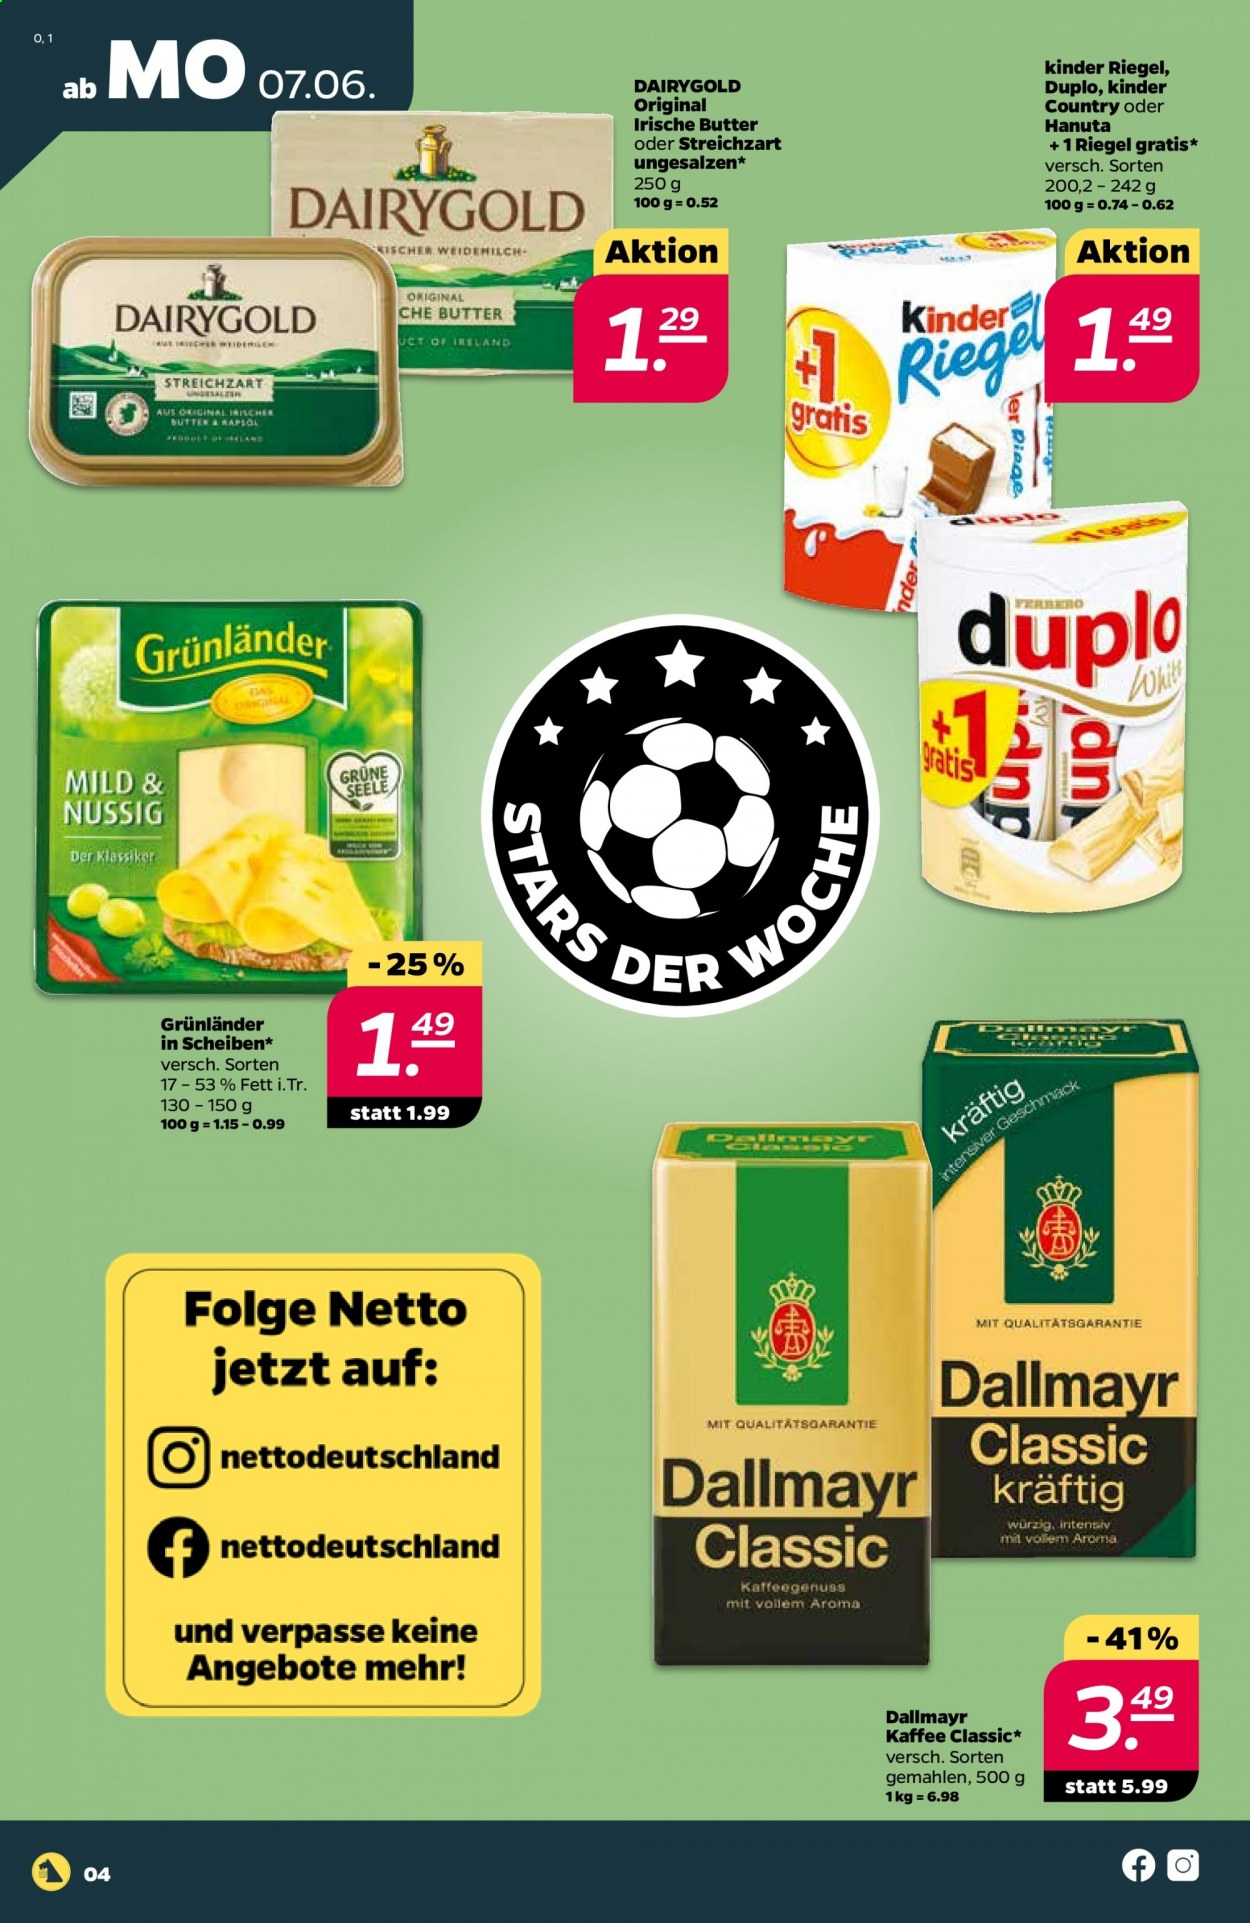 thumbnail - Prospekte Netto - 7.06.2021 - 12.06.2021 - Produkte in Aktion - Käse, Grünländer, Butter, Irische Butter, Streichzart, Dairygold, Duplo, Riegel, Hanuta, Kaffee, Dallmayr. Seite 4.